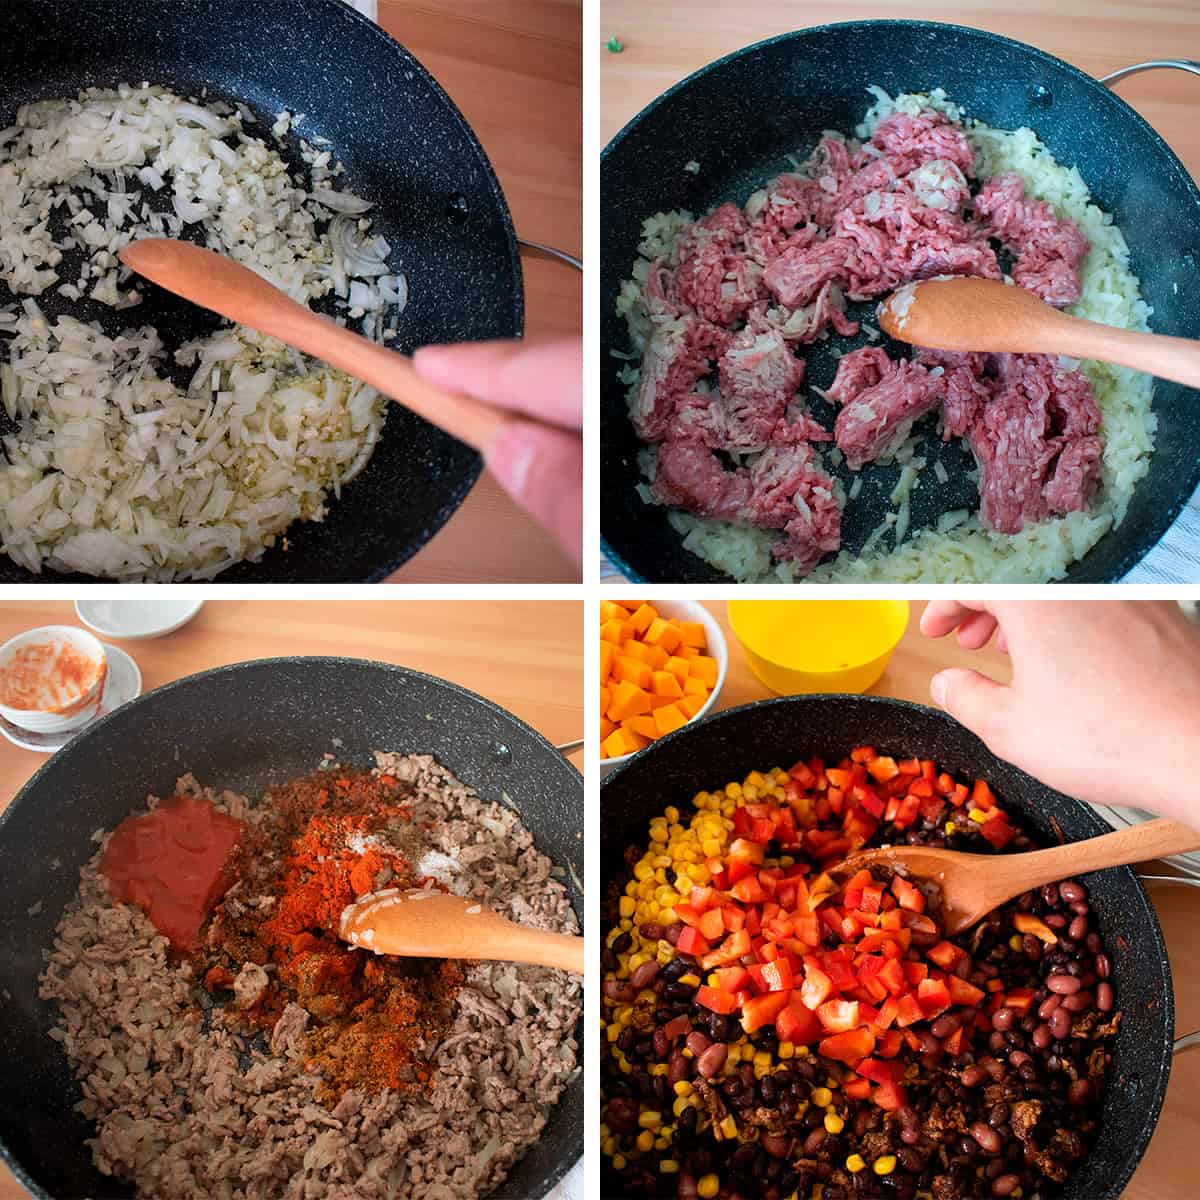 receta paso a paso para preparar chili con carne.